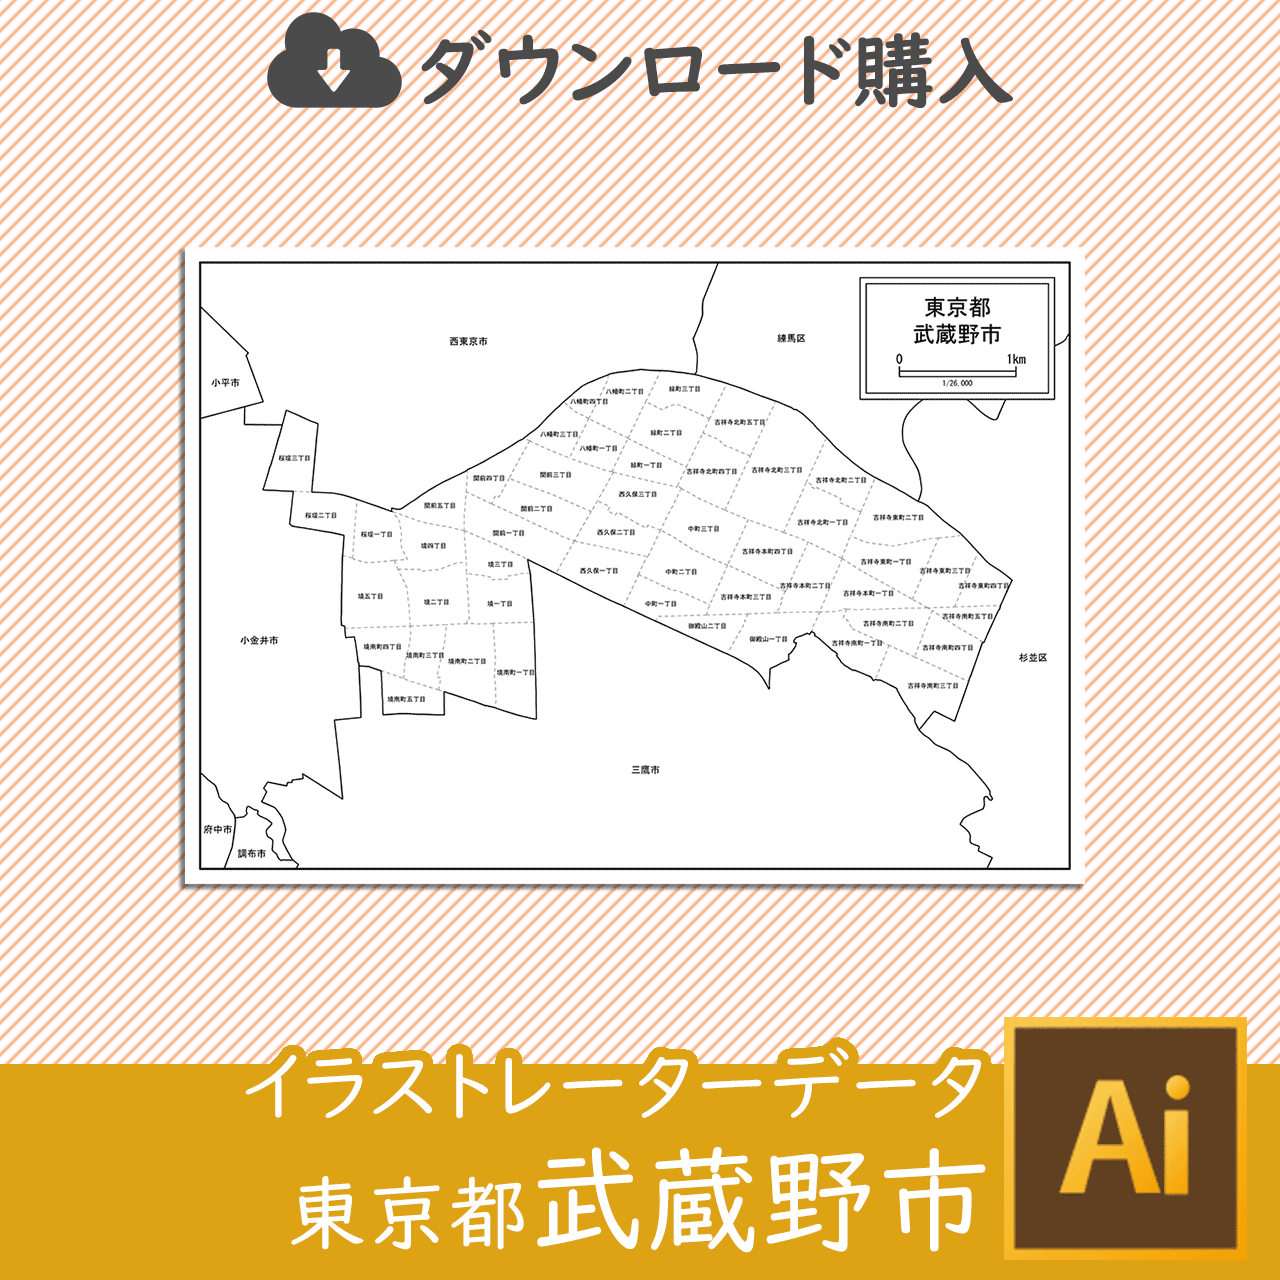 武蔵野市のaiデータのサムネイル画像